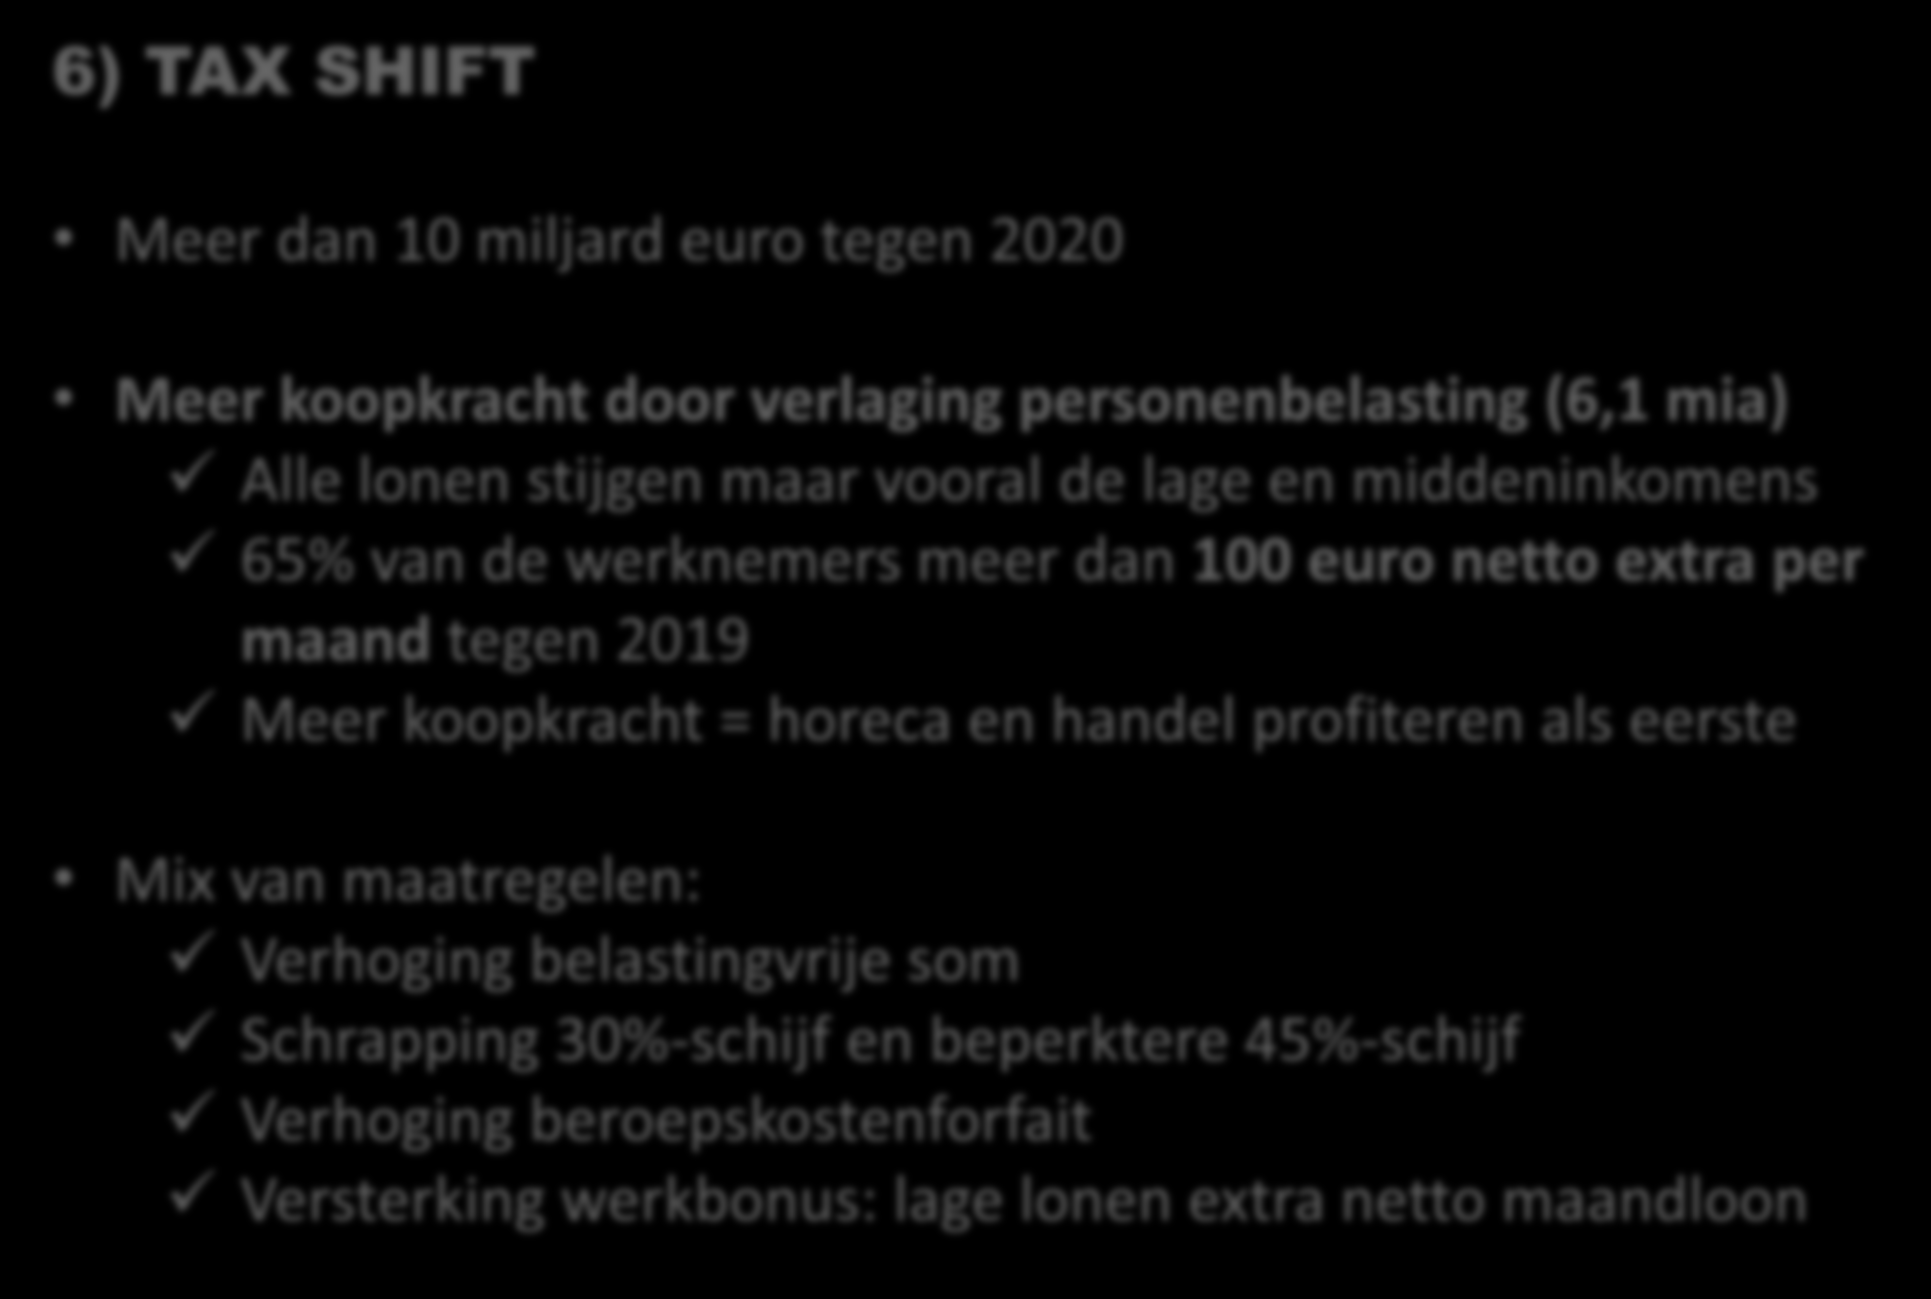 6) TAX SHIFT Meer dan 10 miljard euro tegen 2020 Meer koopkracht door verlaging personenbelasting (6,1 mia) Alle lonen stijgen maar vooral de lage en middeninkomens 65% van de werknemers meer dan 100